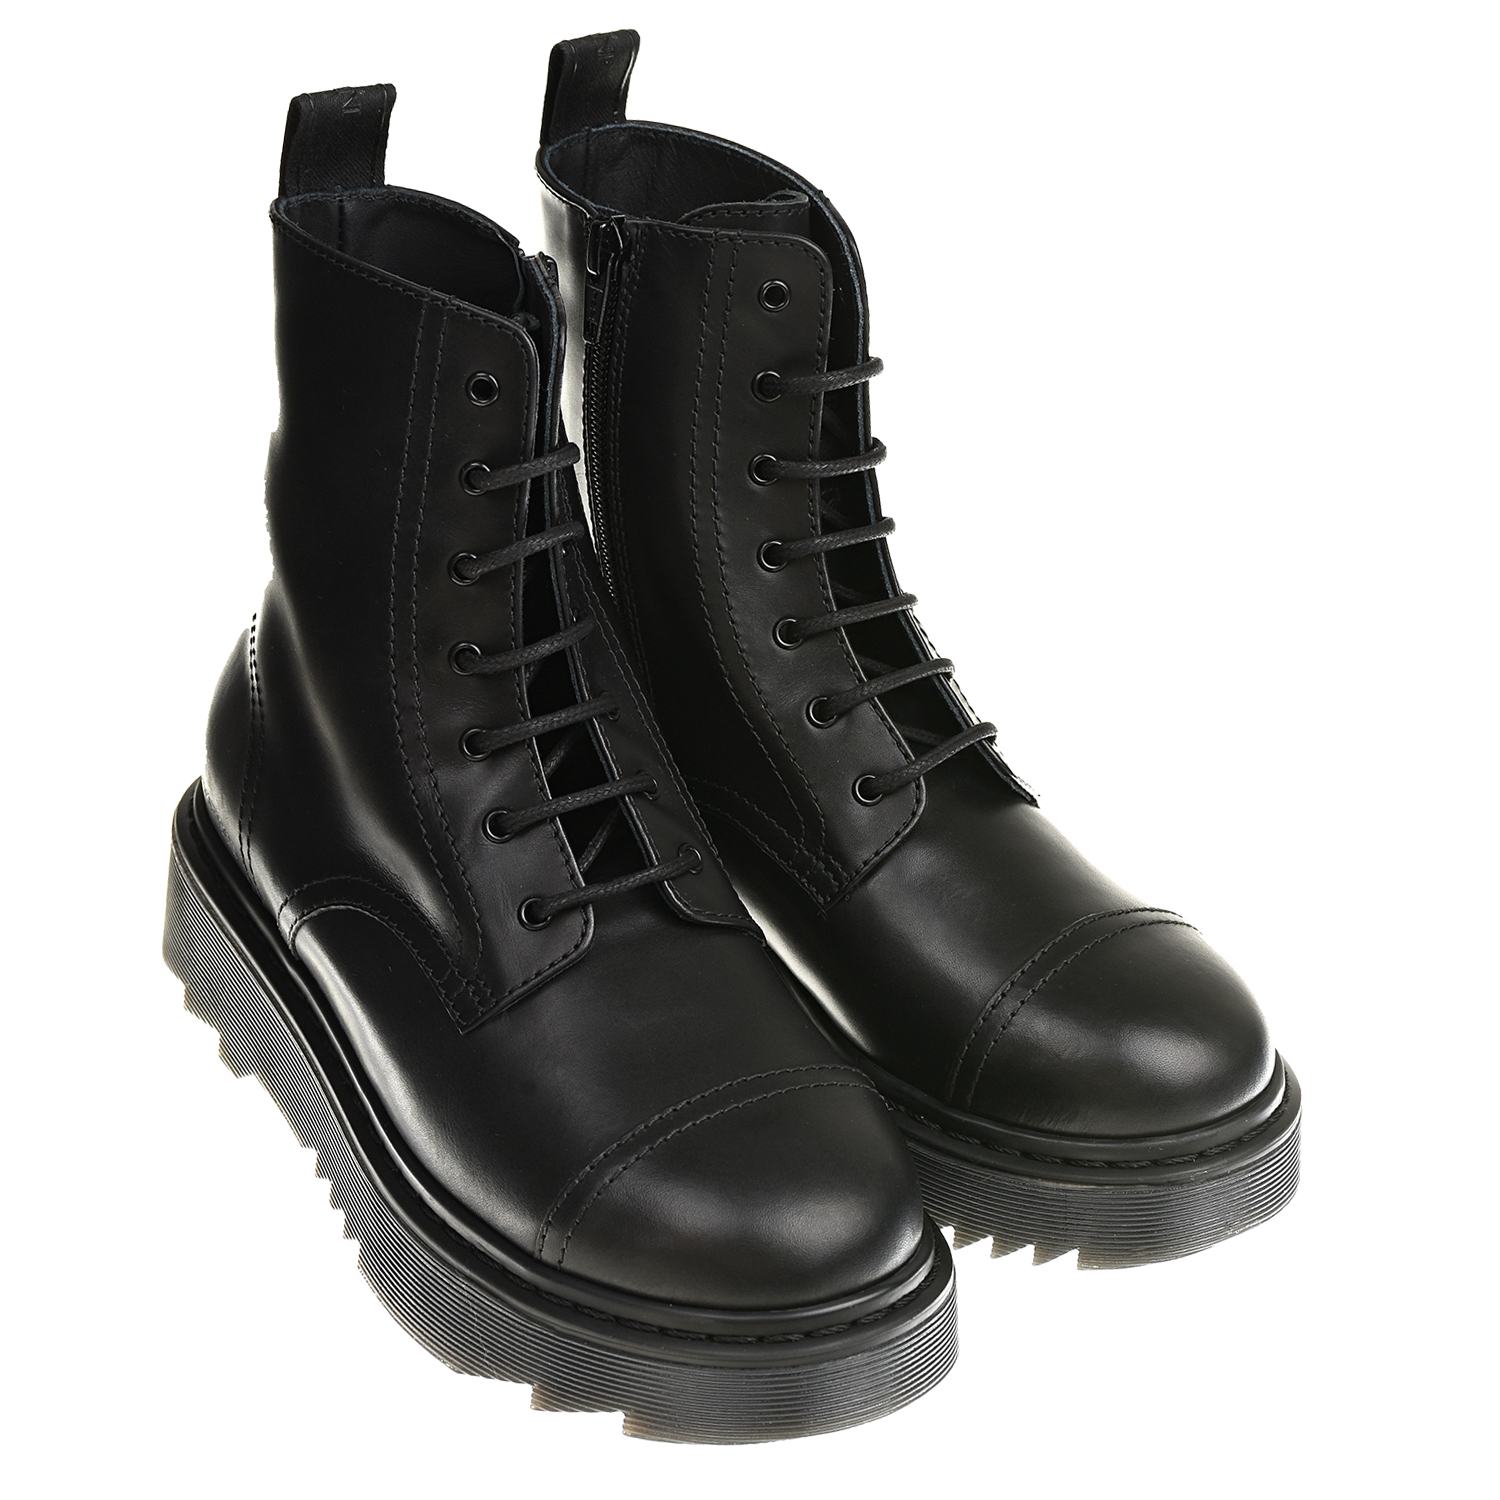 Высокие кожаные ботинки на шунровке и молнии Emporio Armani детские, размер 33, цвет черный